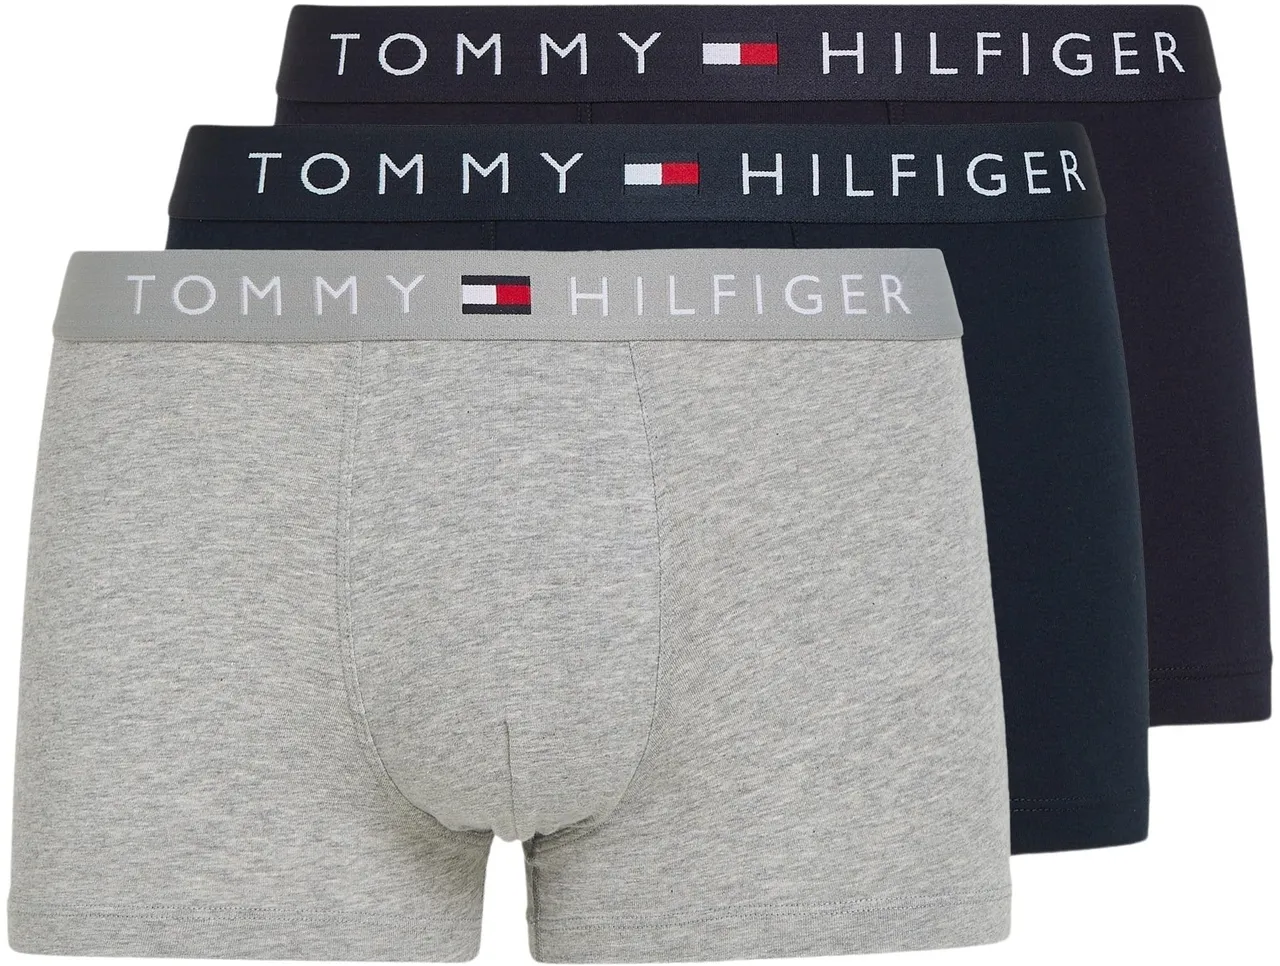 Tommy Hilfiger Herren Boxershorts Trunks Unterwäsche